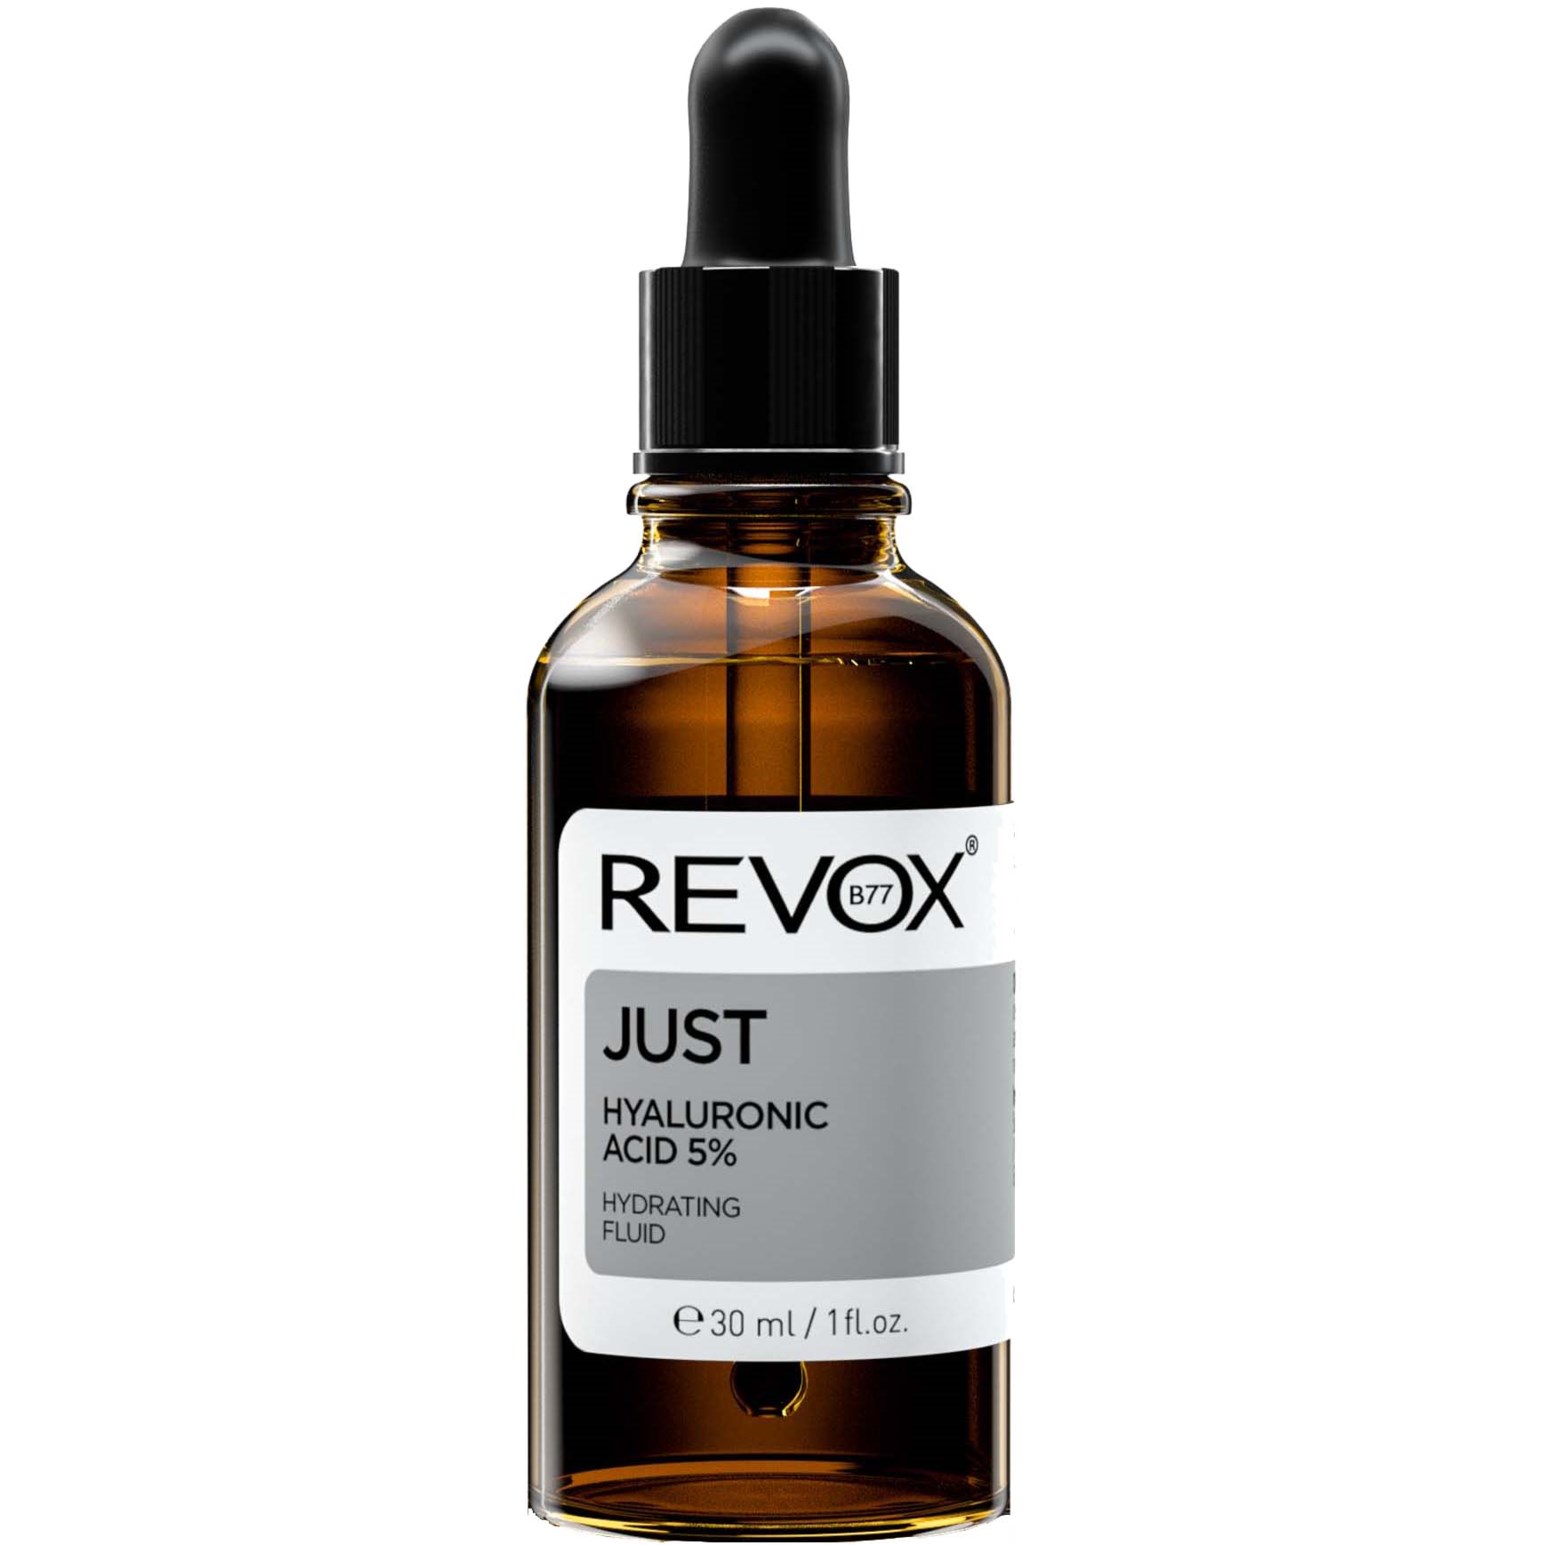 Revox JUST REVOX B77 Hyaluronic Acid DK+J2:J32 30 ml